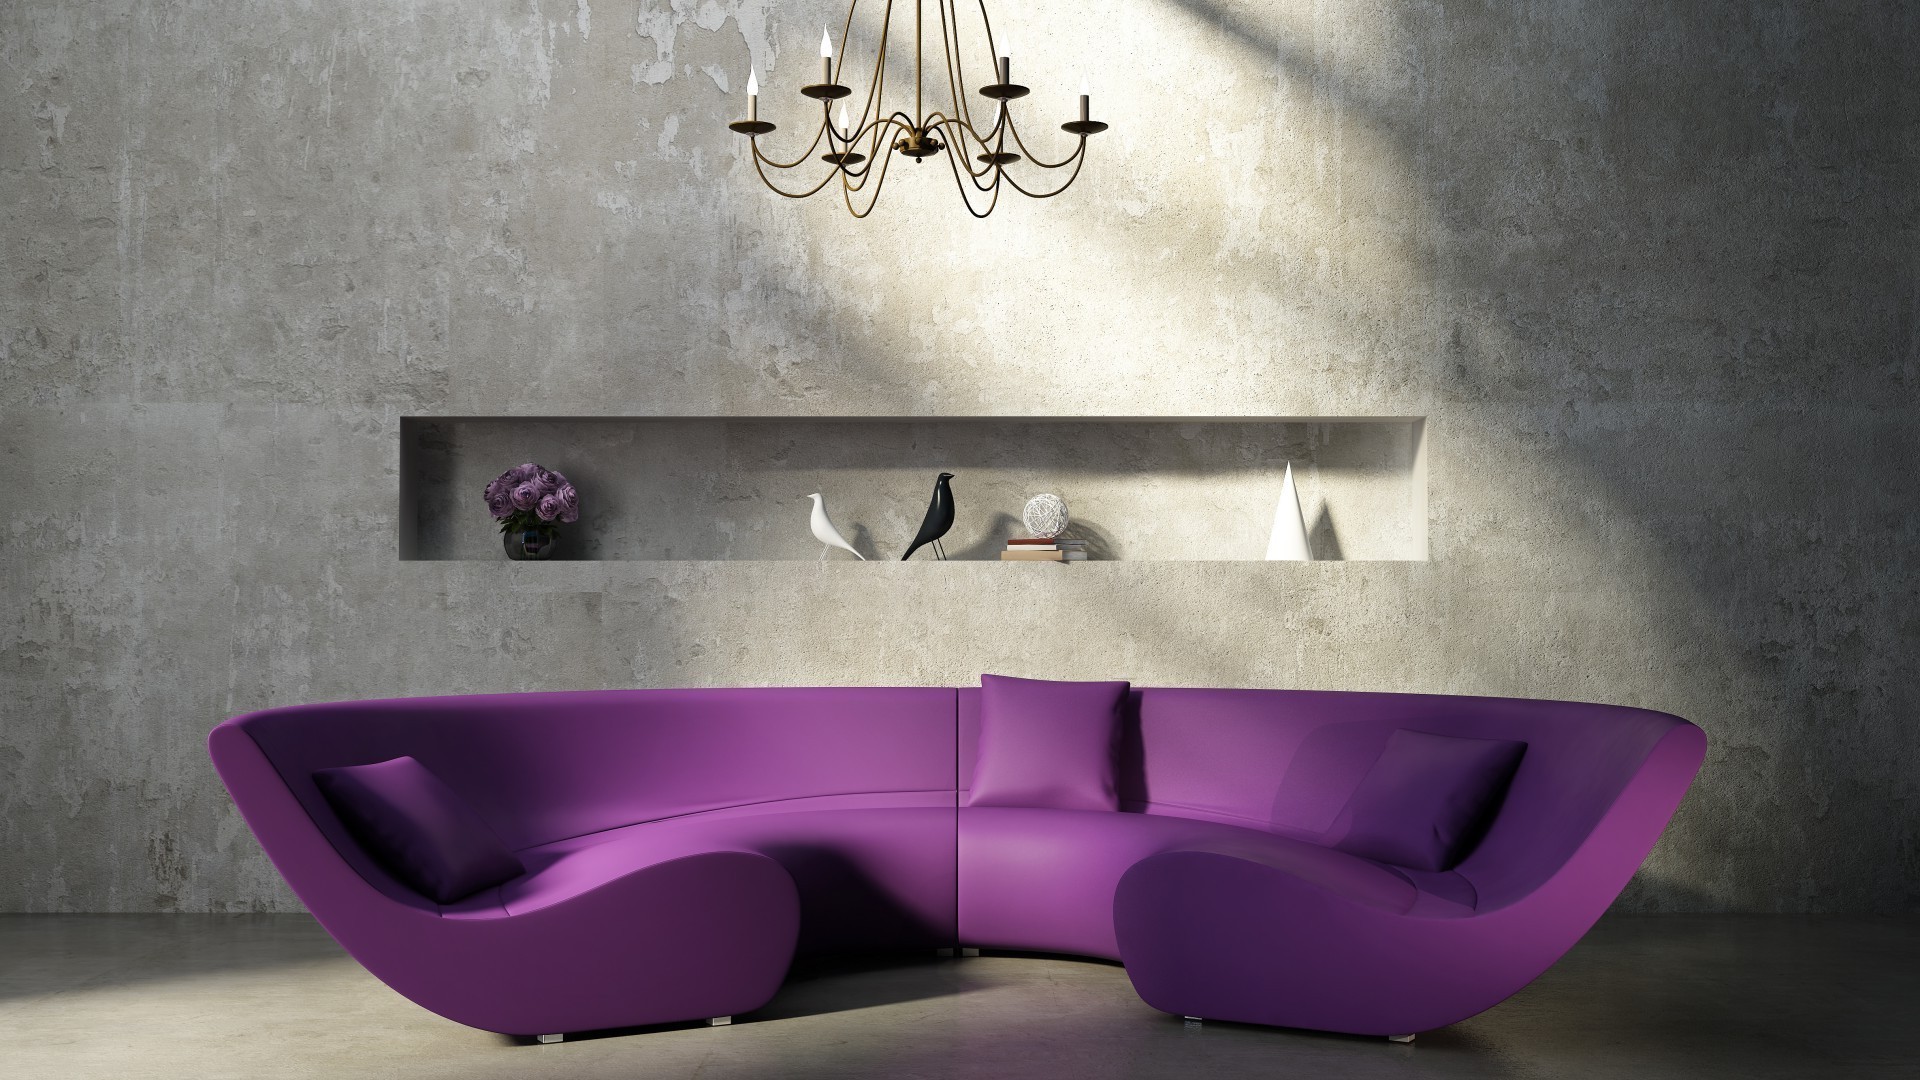 мебель место номер стул современные мода диван в помещении кожа стены внутри элегантный стиль роскошные семья